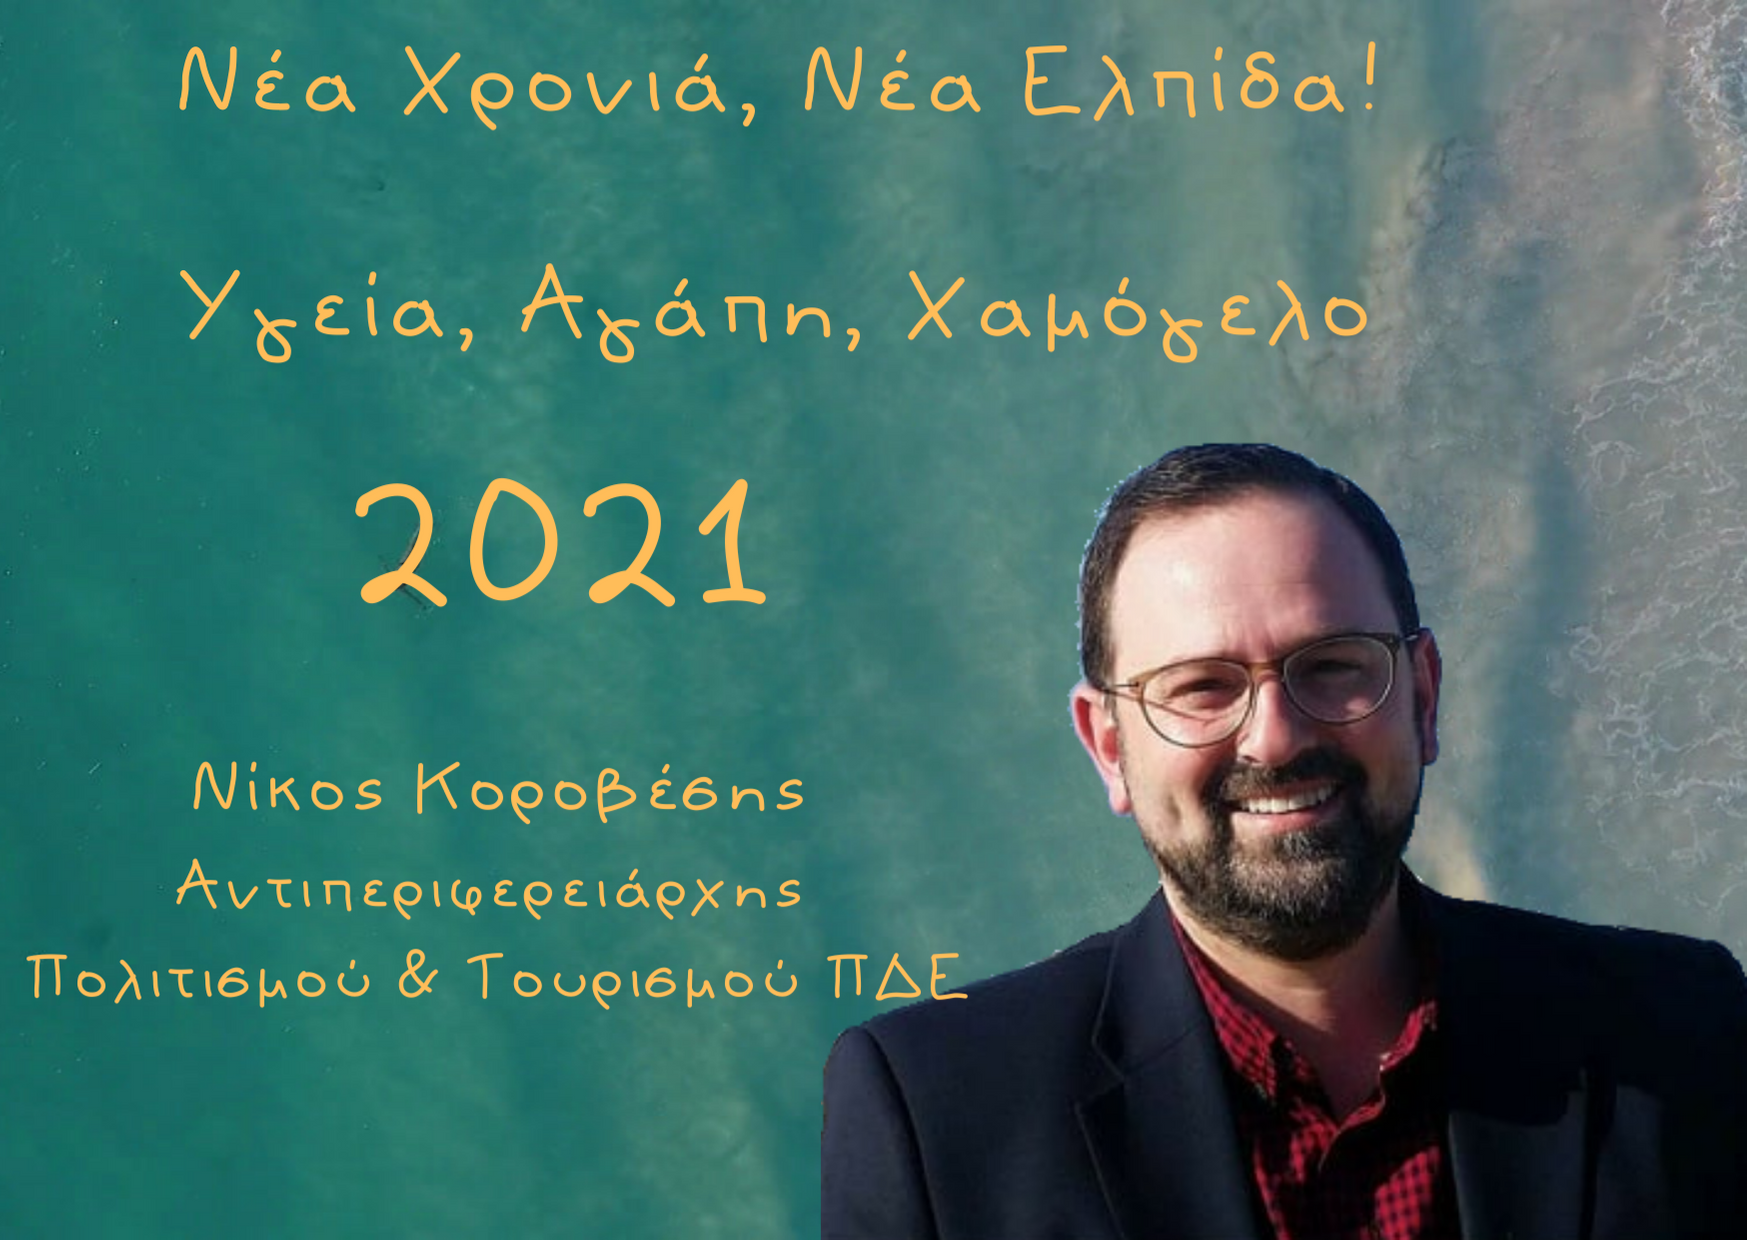 Ευχές για το νέο έτος από τον Αντιπεριφερειάρχη Πολιτισμού & Τουρισμού ΠΔΕ Νίκο Κοροβέση